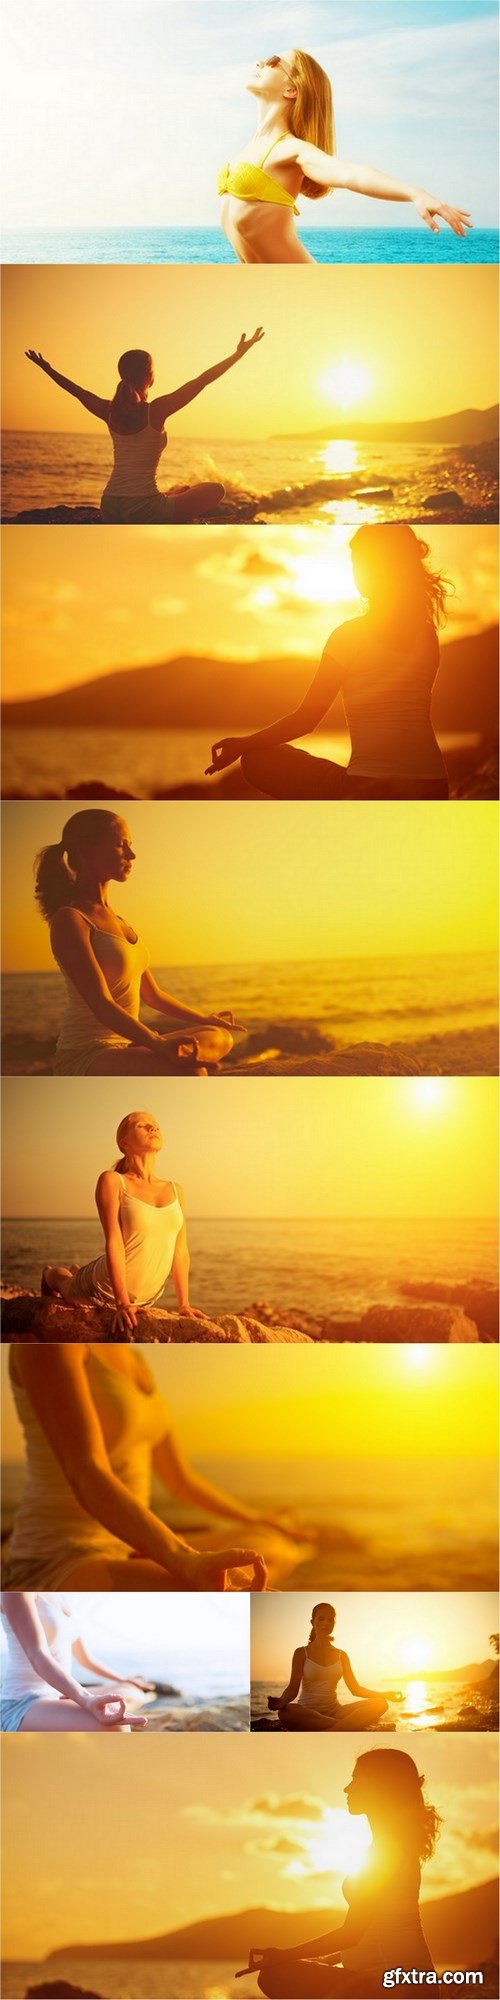 Meditation - 9 UHQ JPEG Stock Images